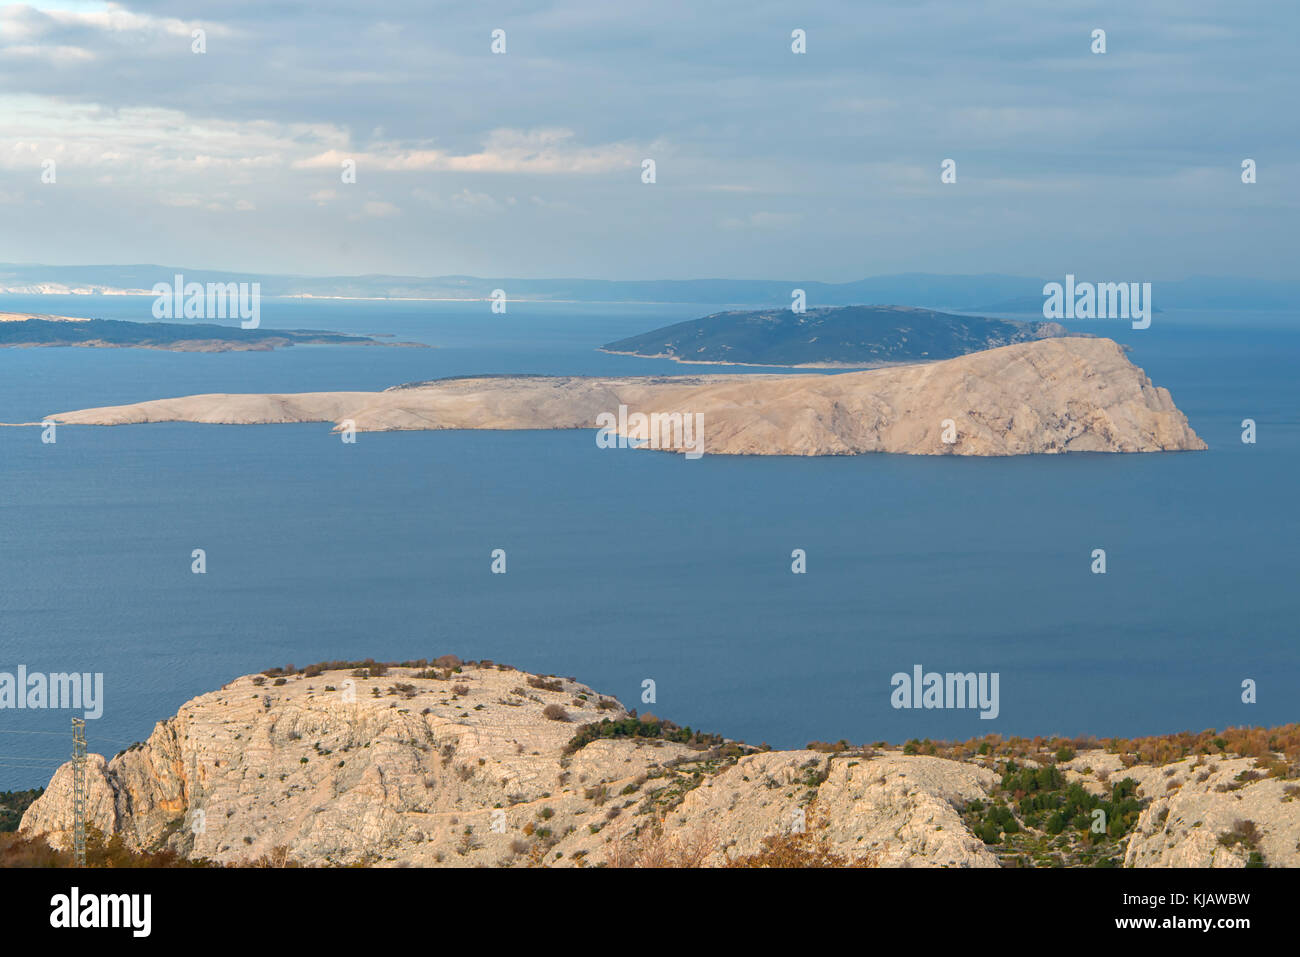 Goli Otok (Barren Island) in Croatia Stock Photo